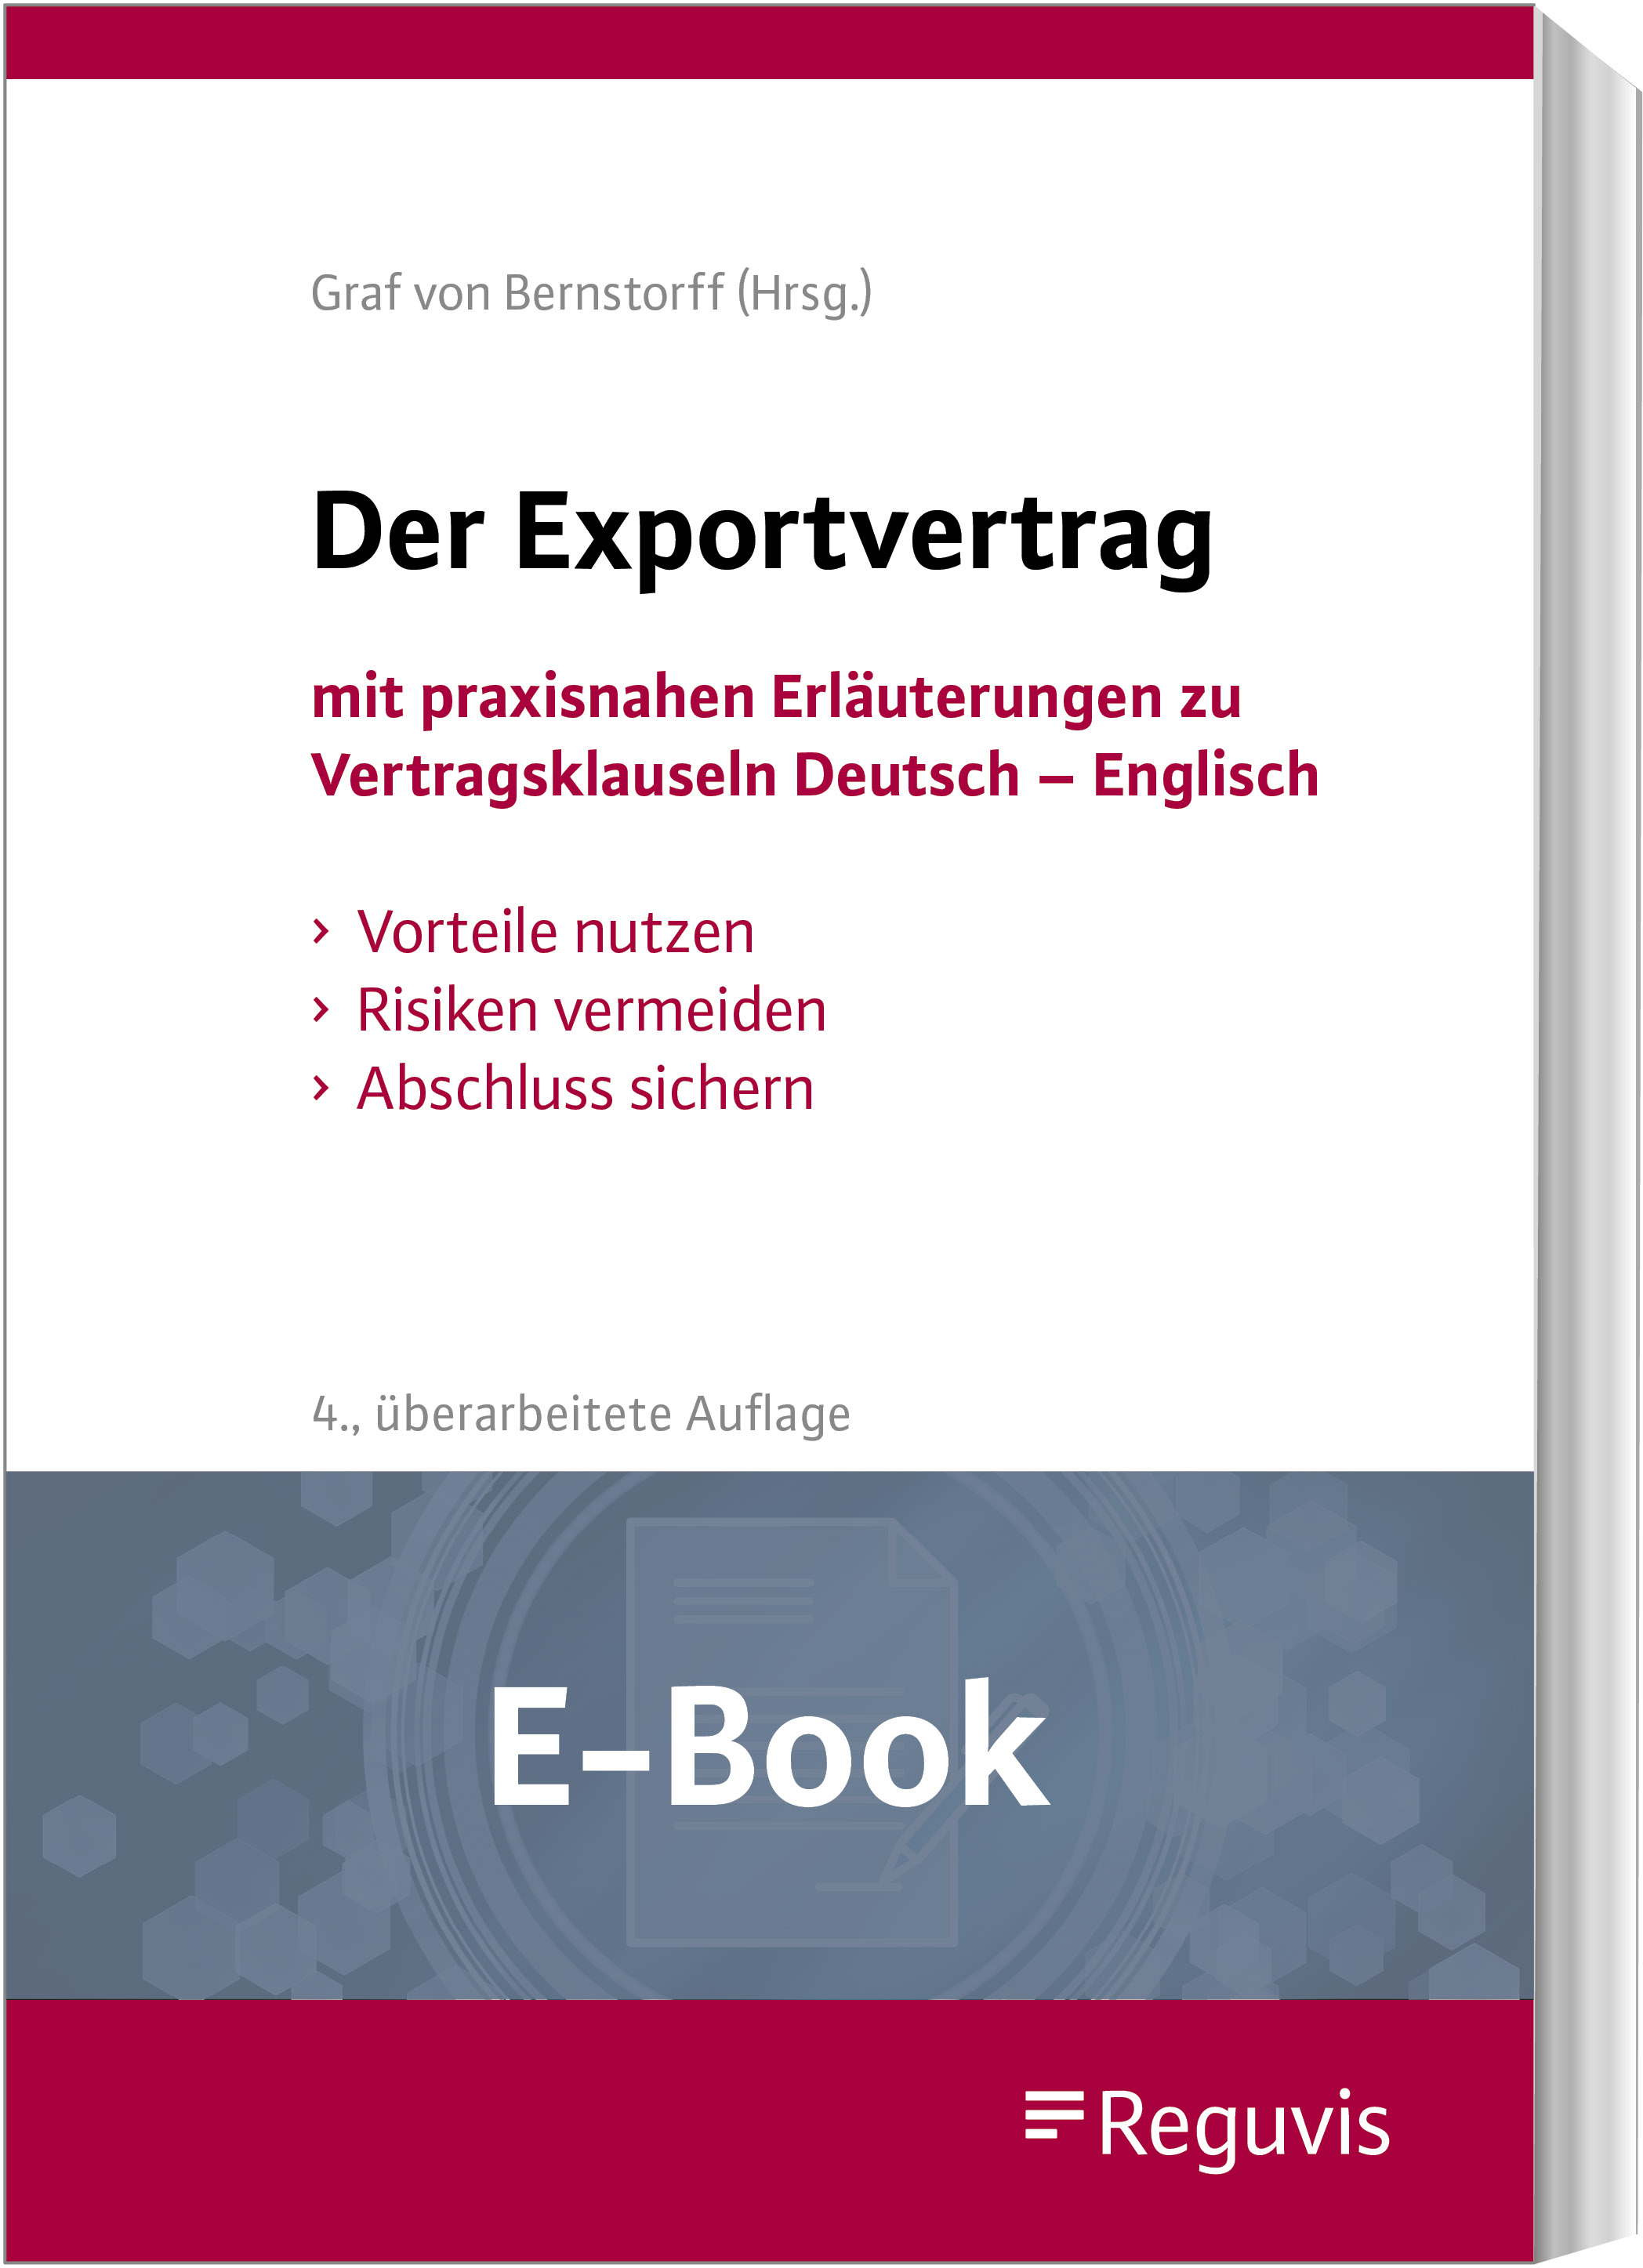 Der Exportvertrag (E-Book)